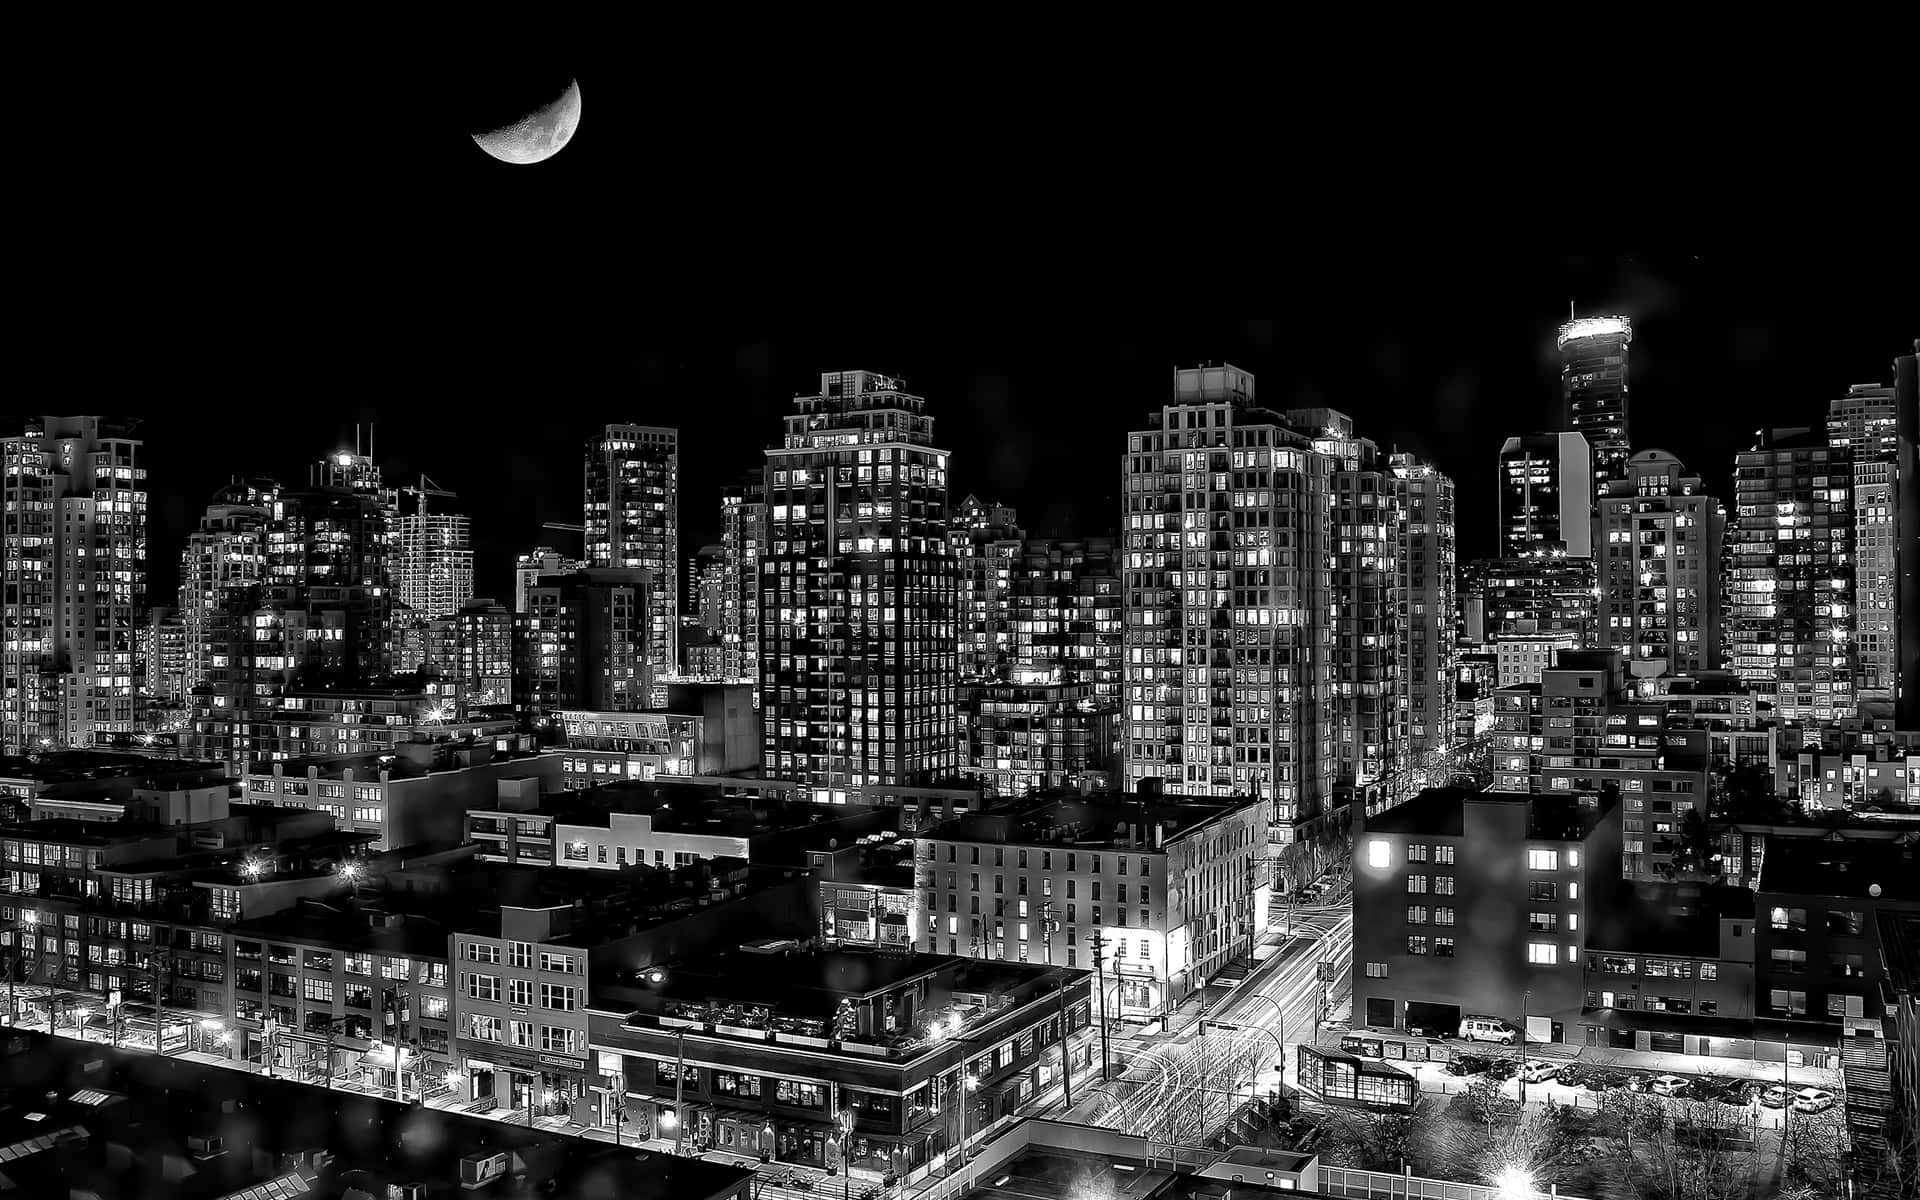 Monochrome City Nightscape Wallpaper